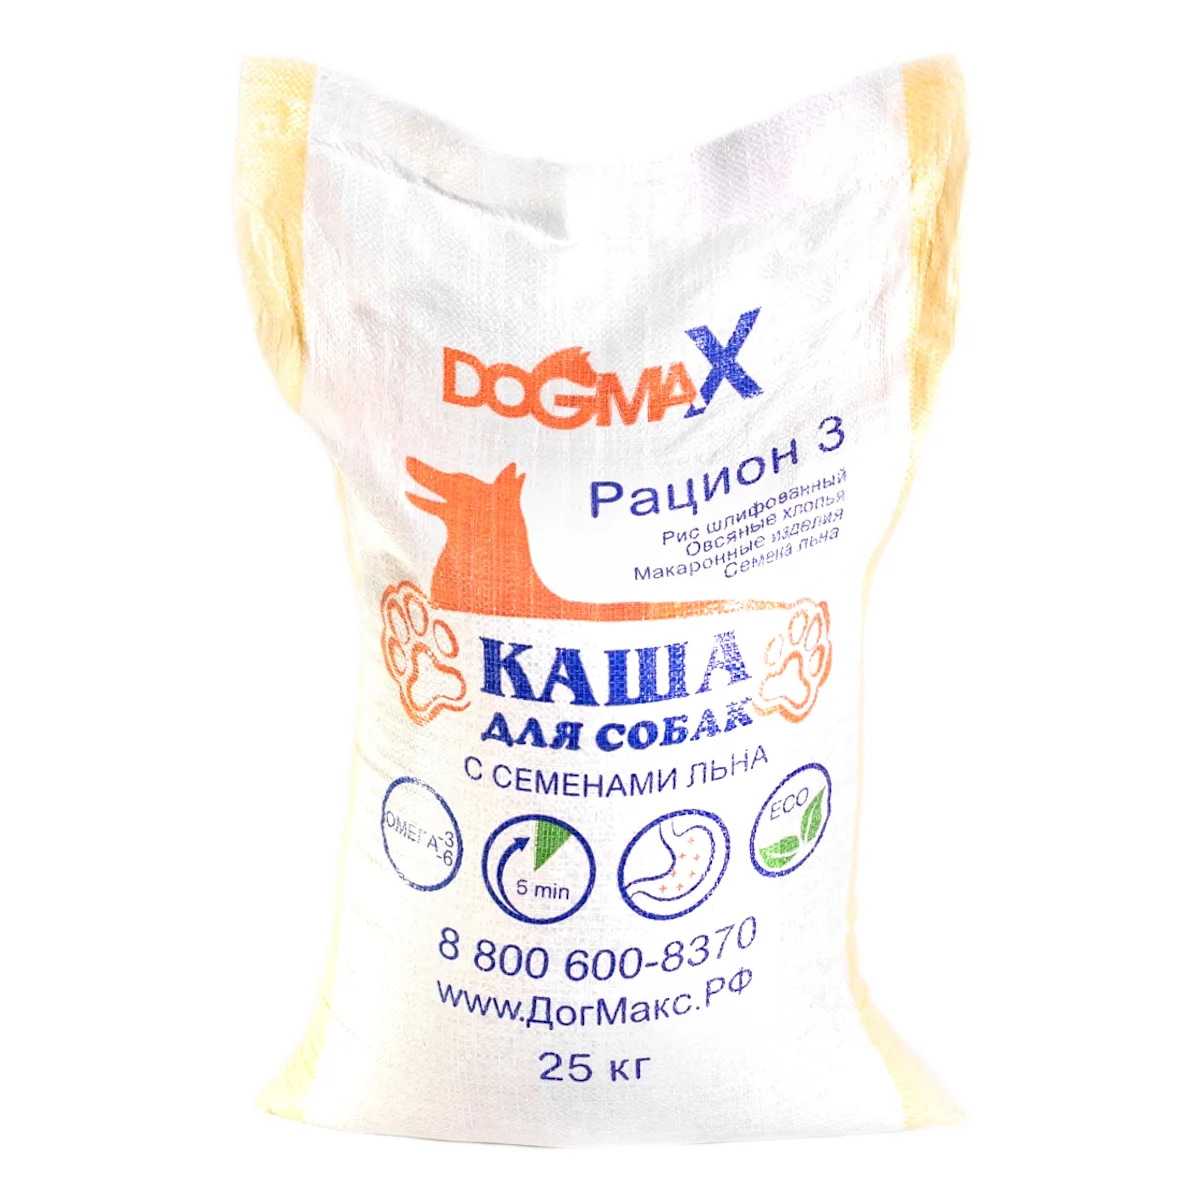 DOGMAX dog food Ration 3 (25 kg)